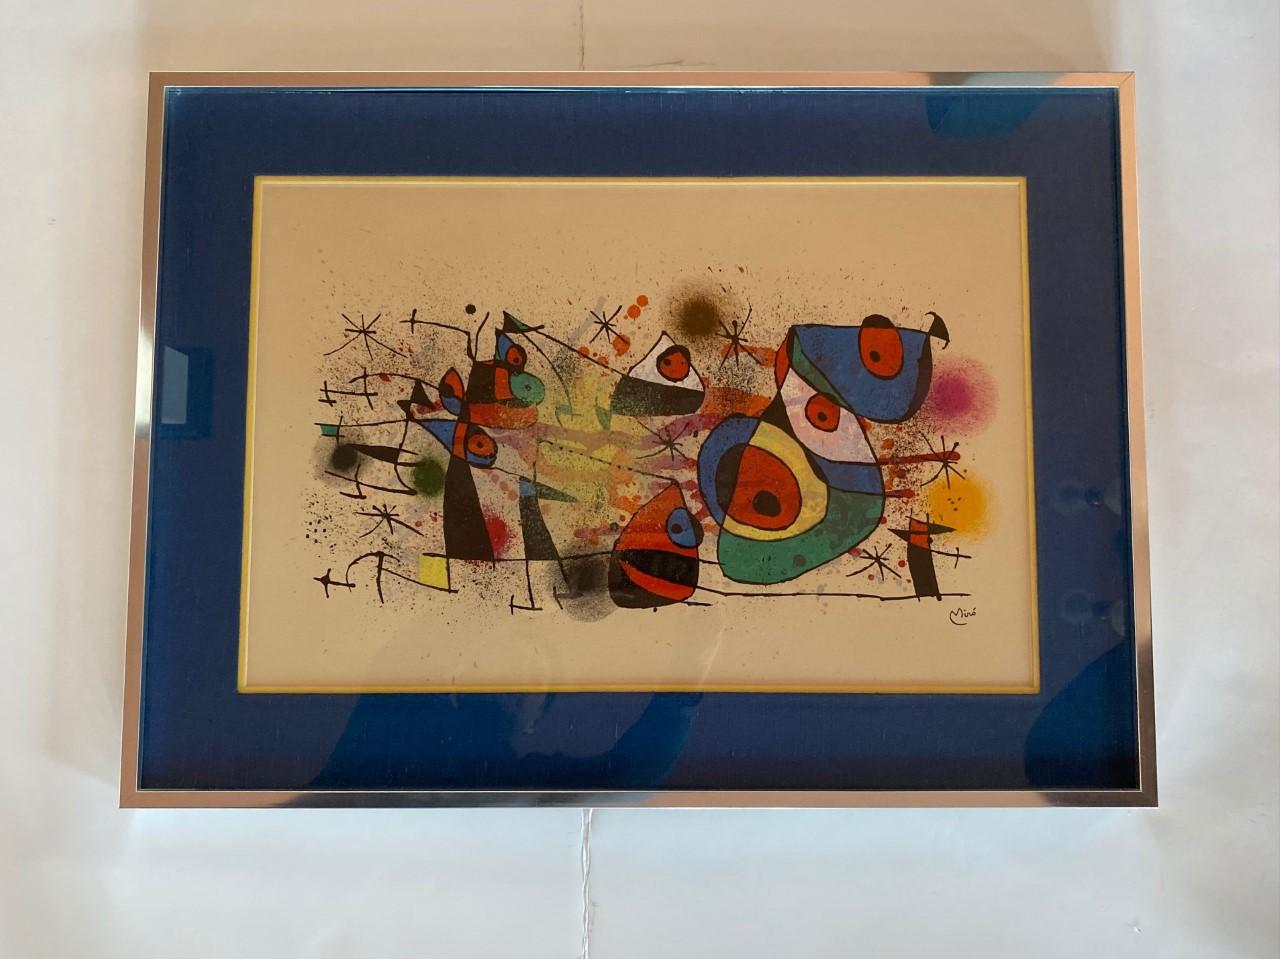 Joan Miró, Ceramiques, ist eine Original-Lithographie aus dem Jahr 1974.  Es hat eine gedruckte Unterschrift unten rechts auf dem Bild.  Herausgegeben und gedruckt von Maeght, Paris.  M.928.
Joan Miró wurde weithin als einer der führenden